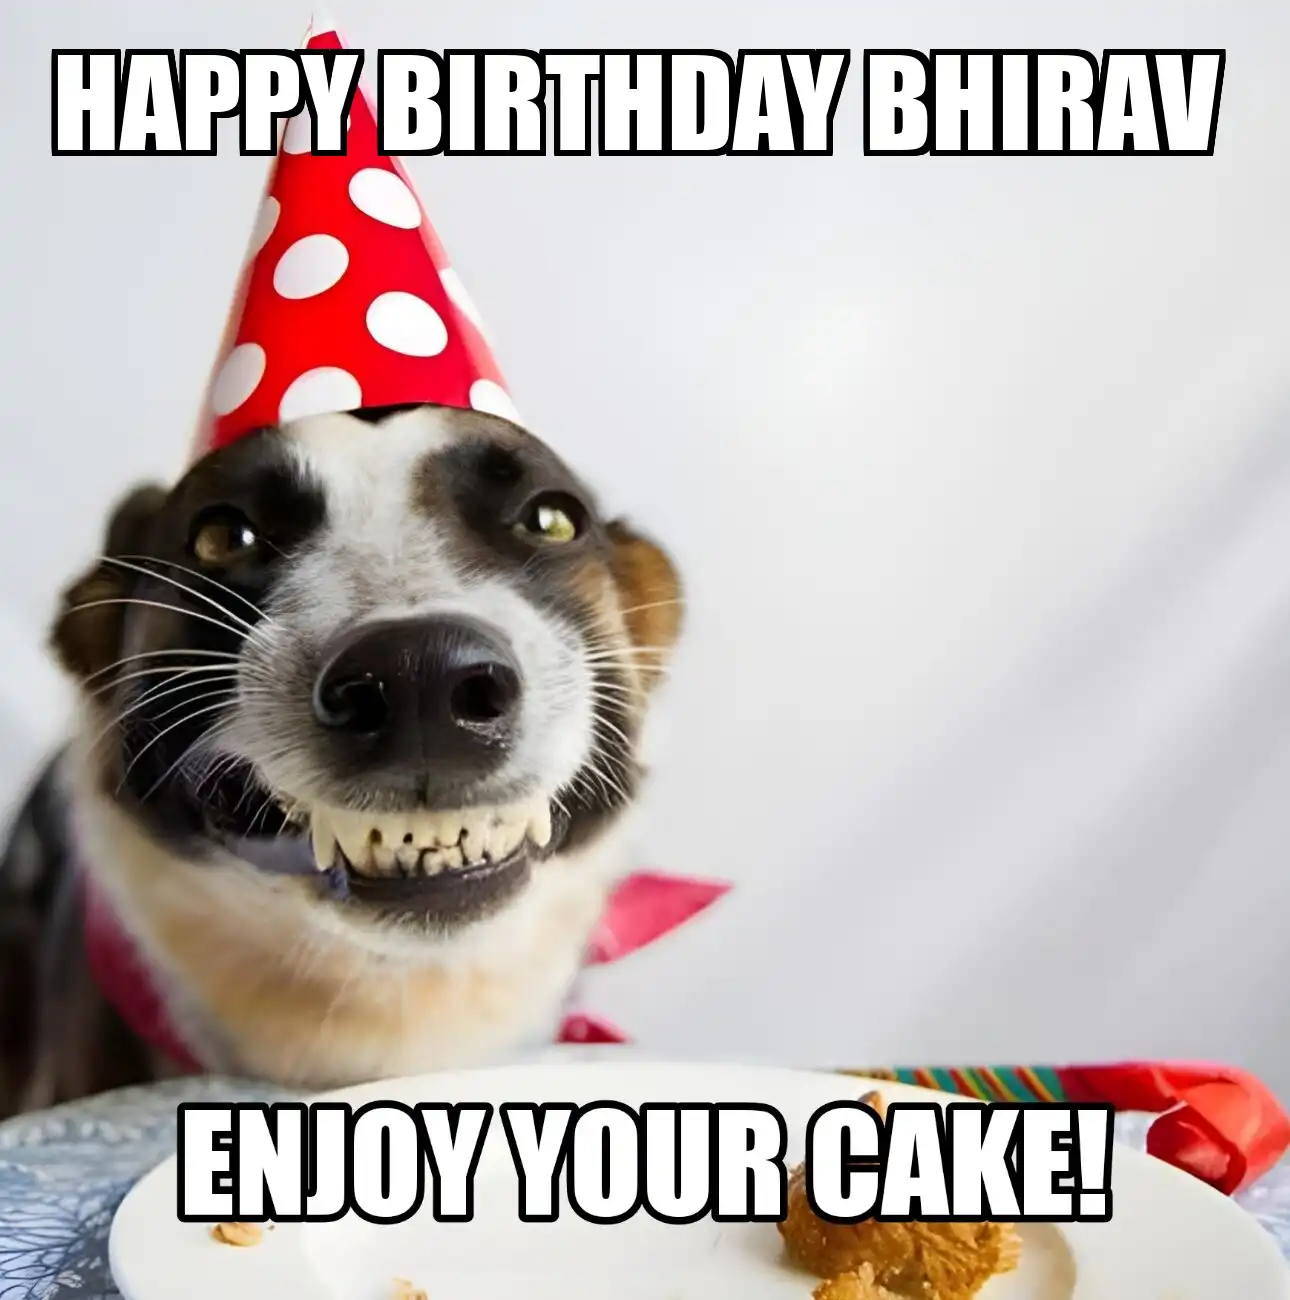 Happy Birthday Bhirav Enjoy Your Cake Dog Meme